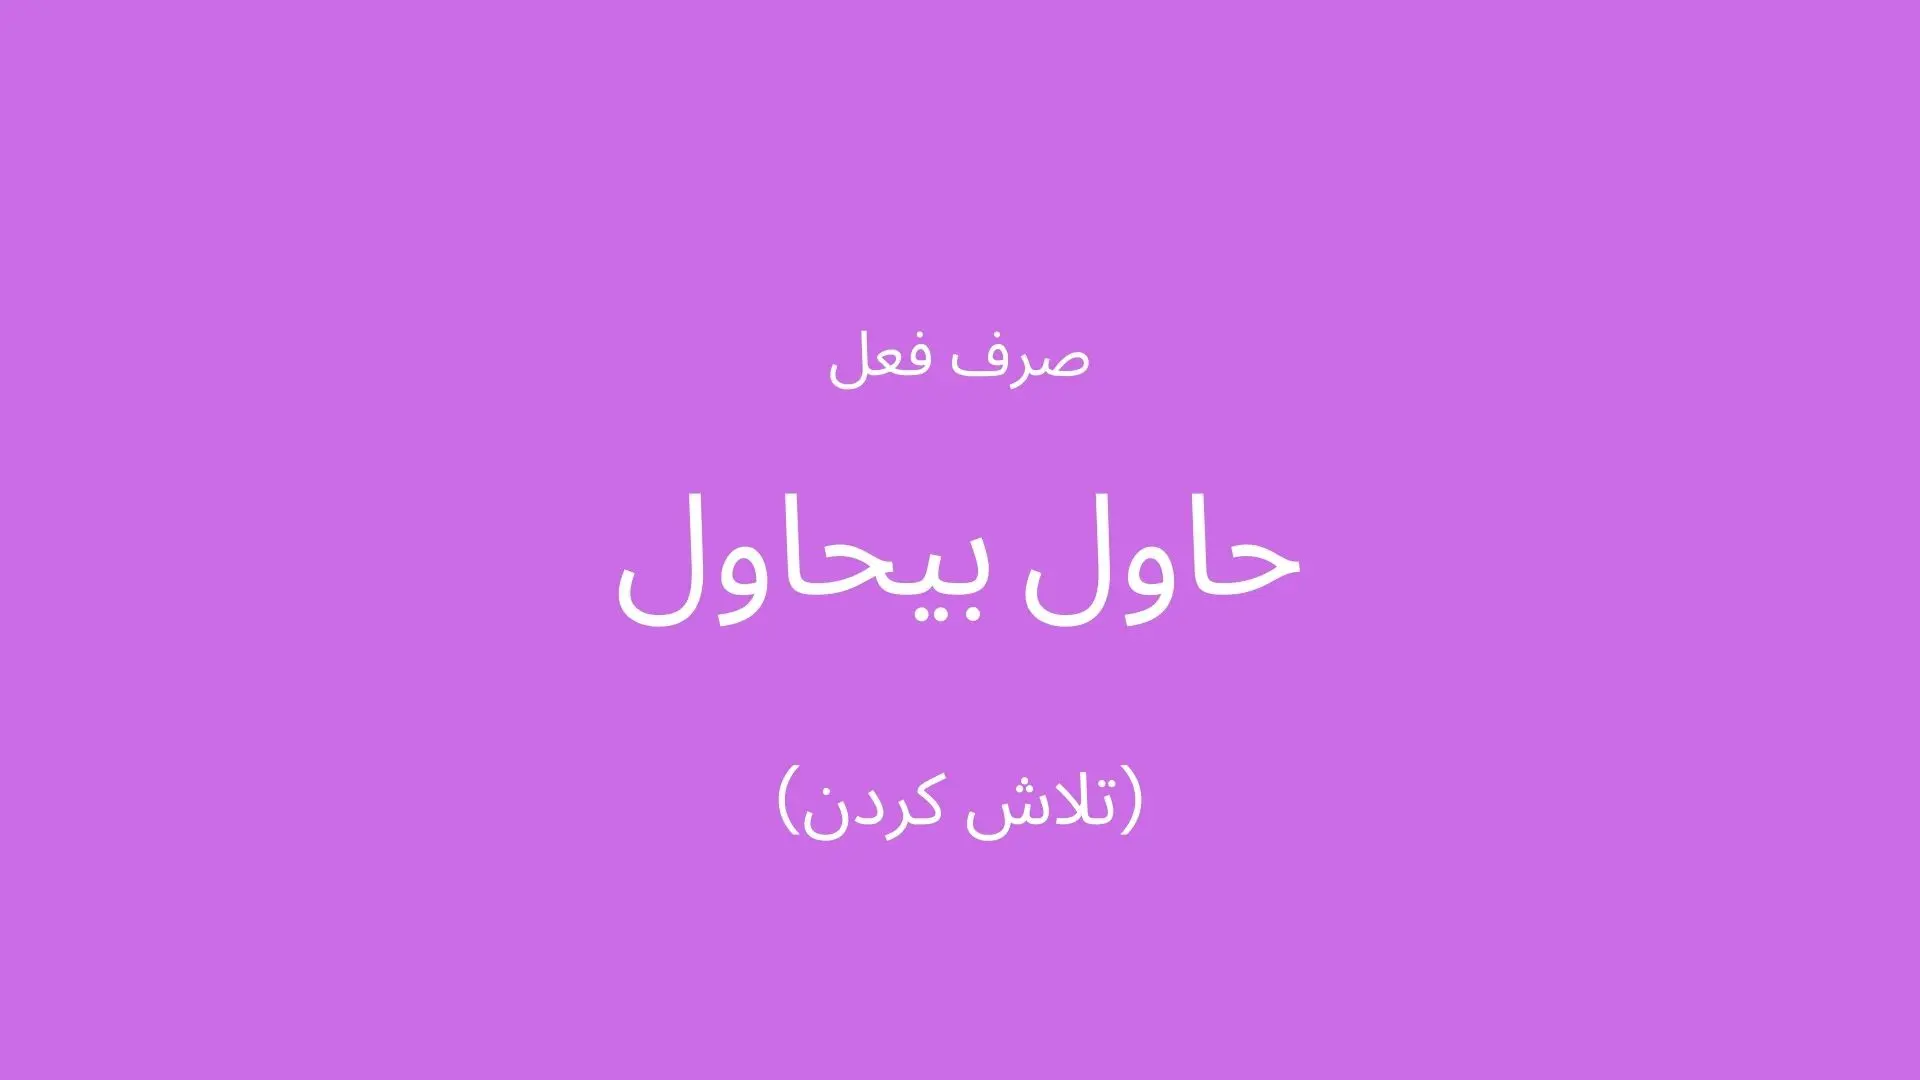 صرف فعل عربی «تلاش کردن» به عربی لهجه لبنانی و سوری